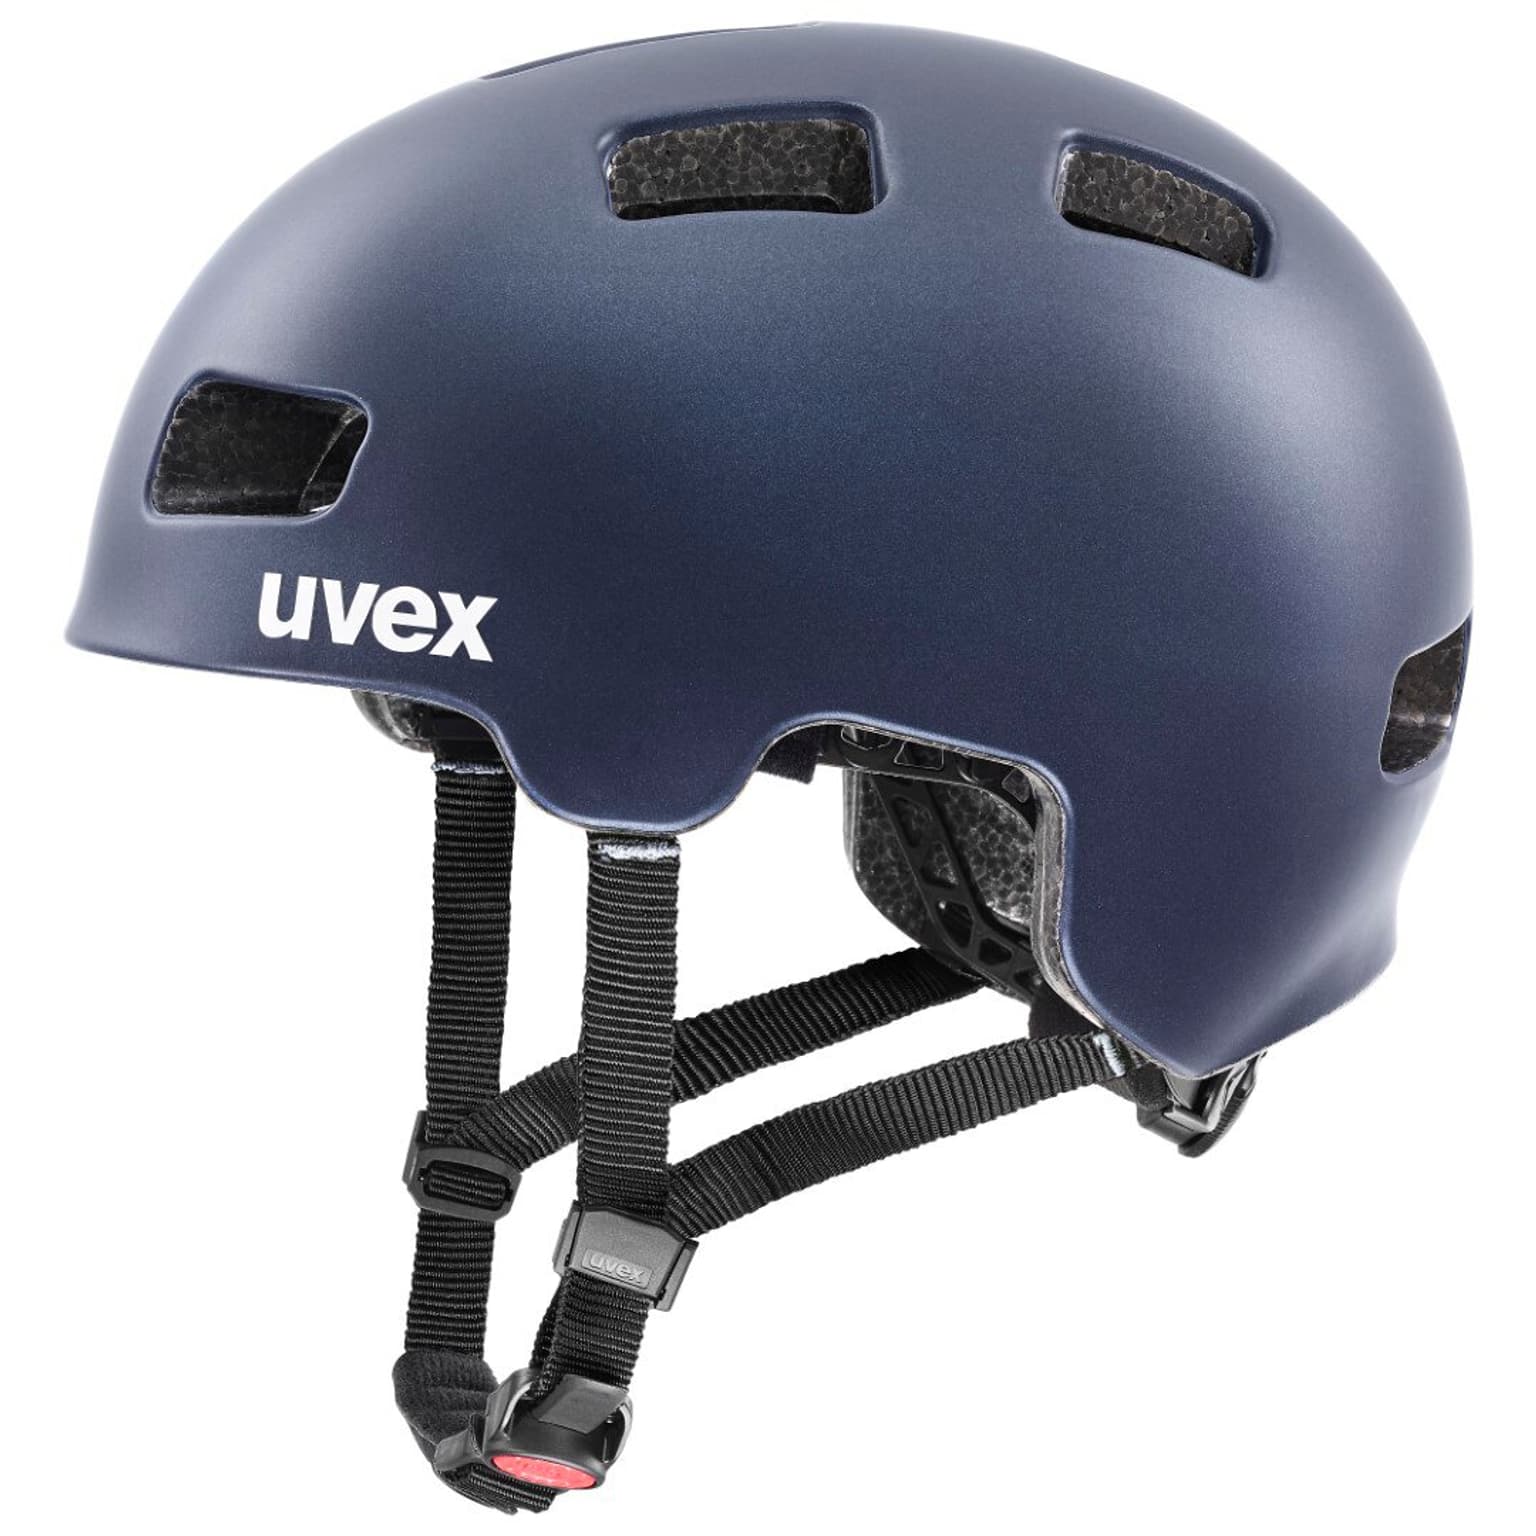 Uvex Uvex hlmt 4 cc Velohelm blu-scuro 1